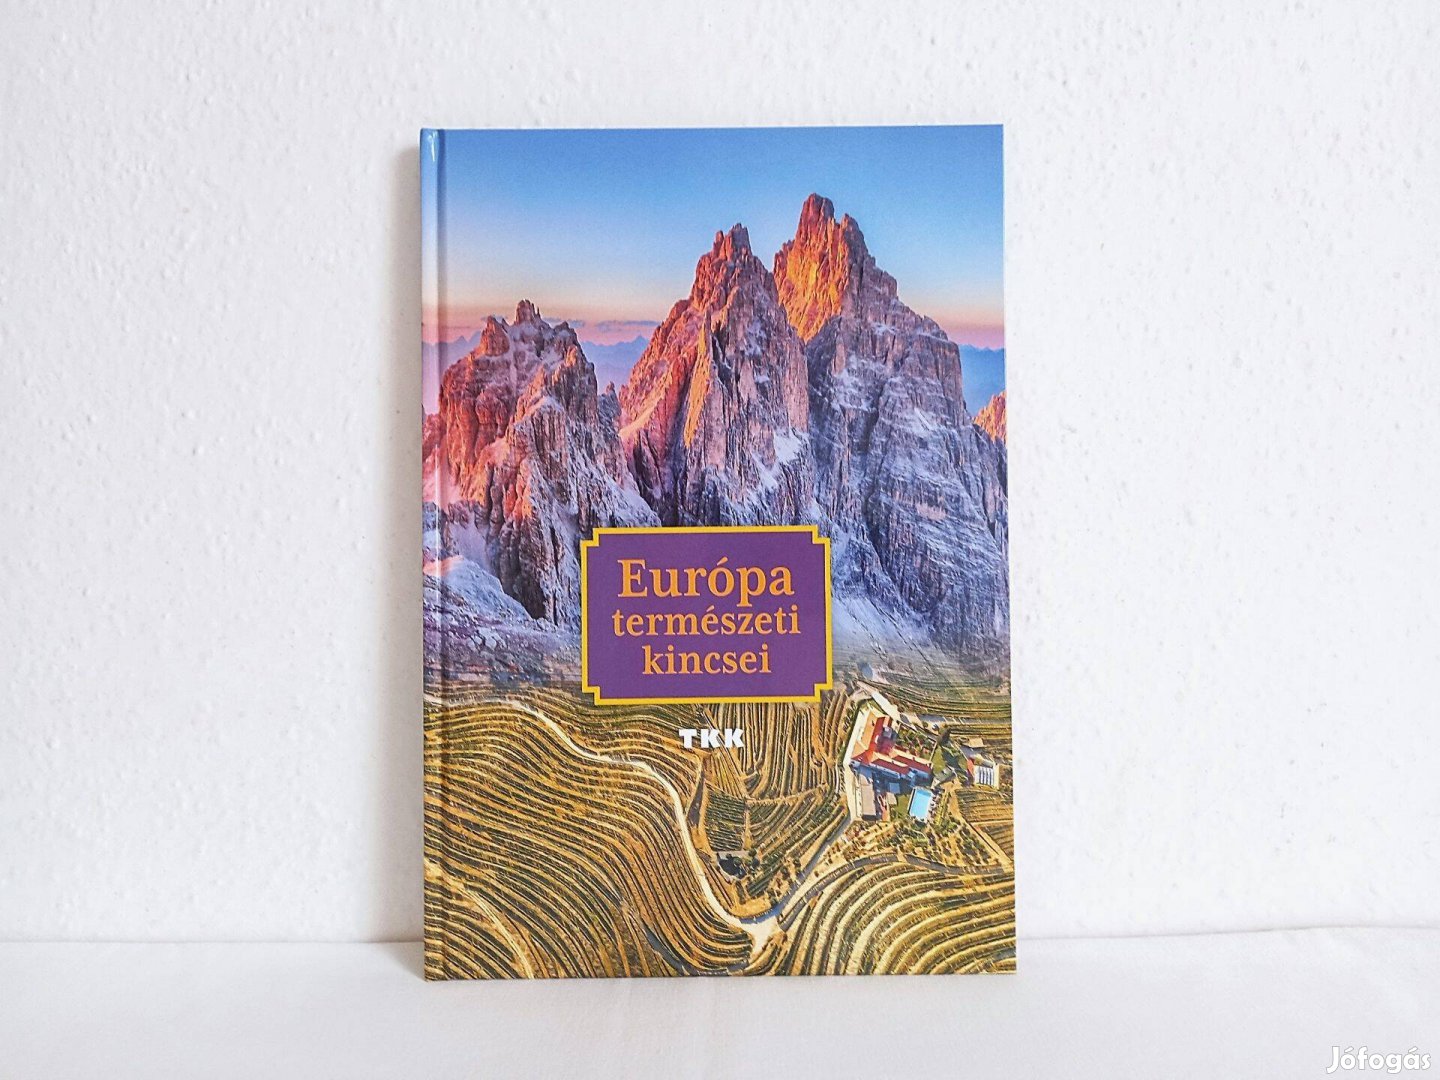 Európa természeti kincsei, ismeretterjesztő könyv, album, sok fénykép